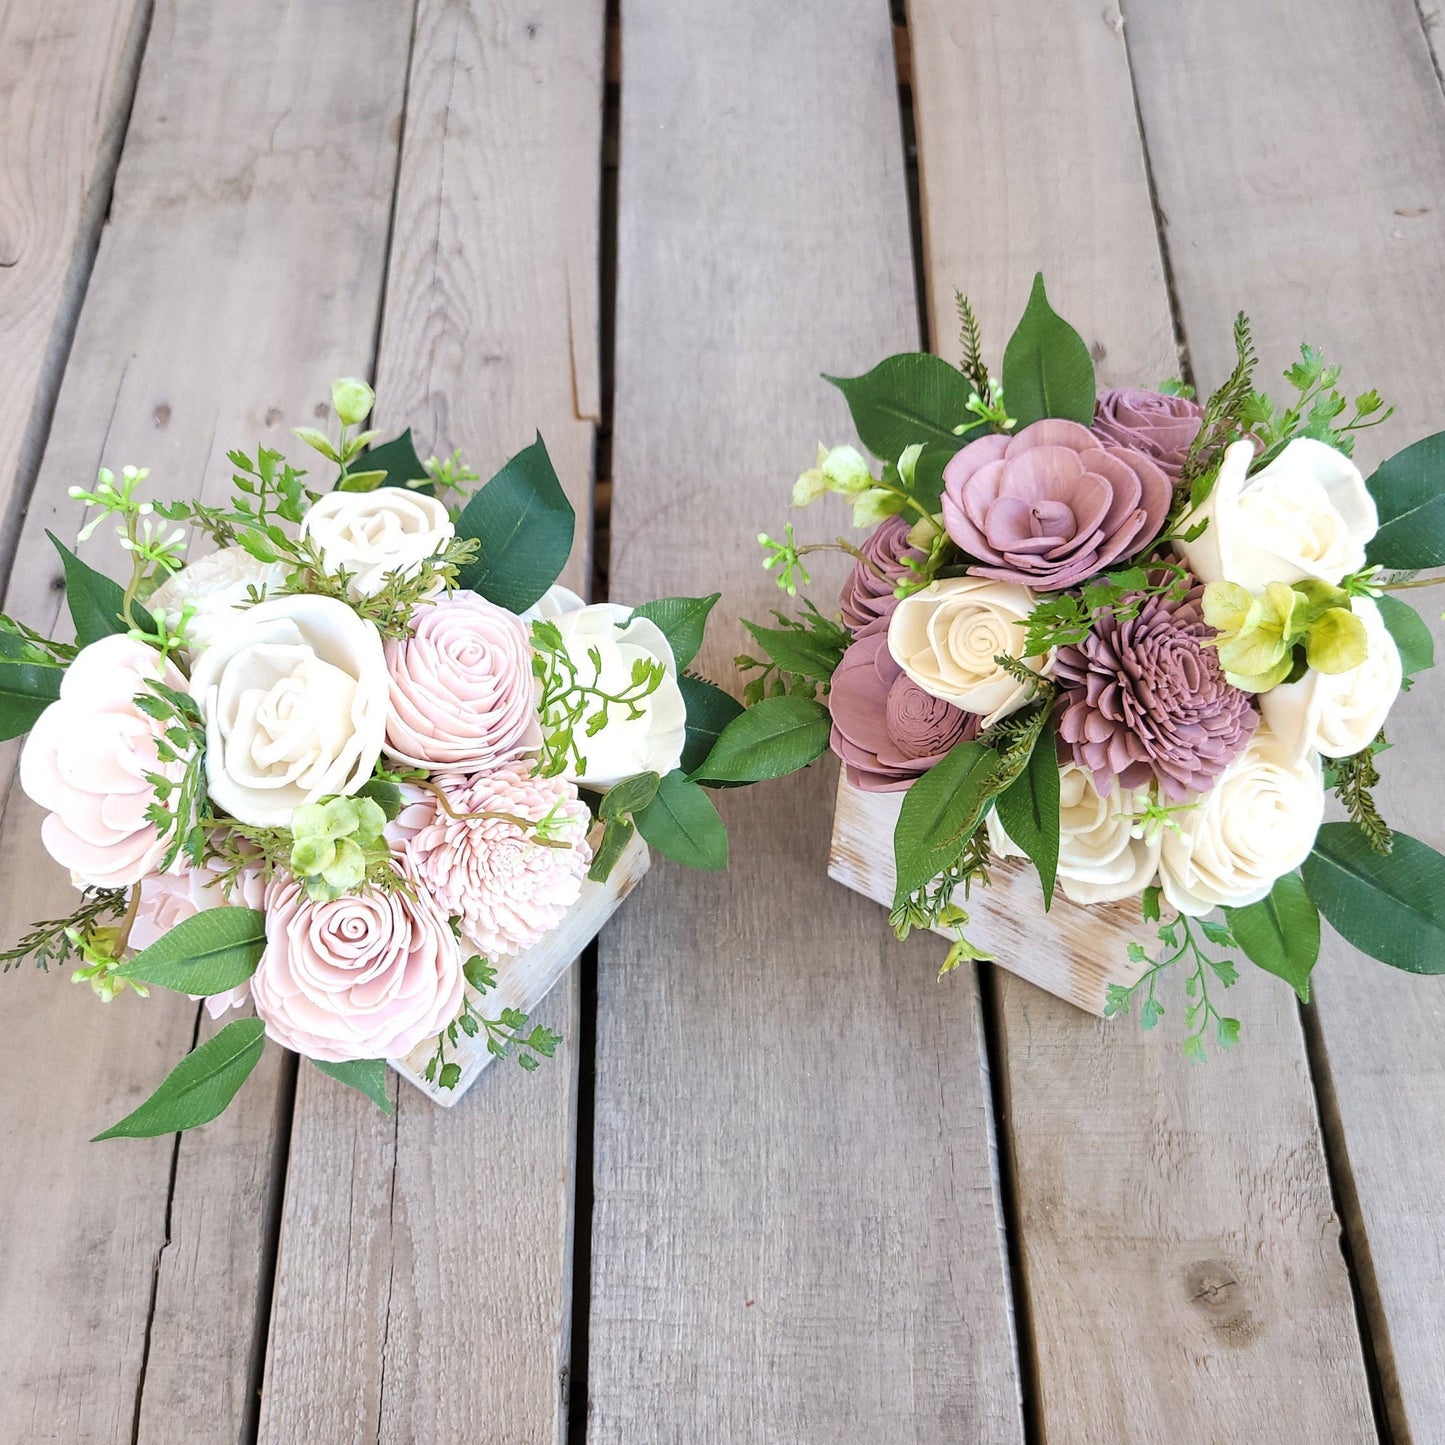 Wood Flower Floral Arrangement, Table Centerpiece, Flower Box, Wedding, Get Well, Flower Arrangement, Shelf Decor Mother's Day